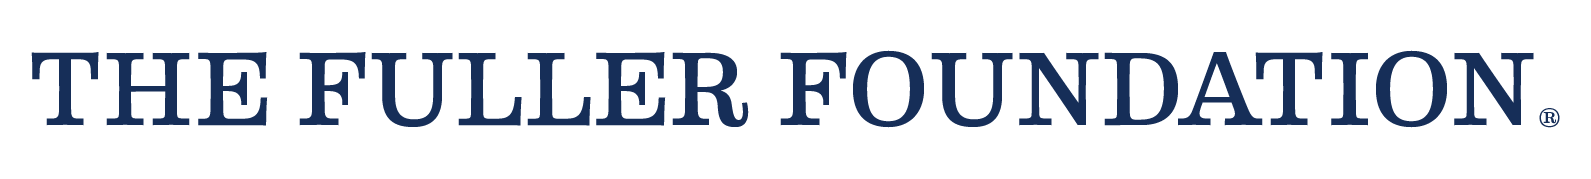 The Fuller Foundation logo